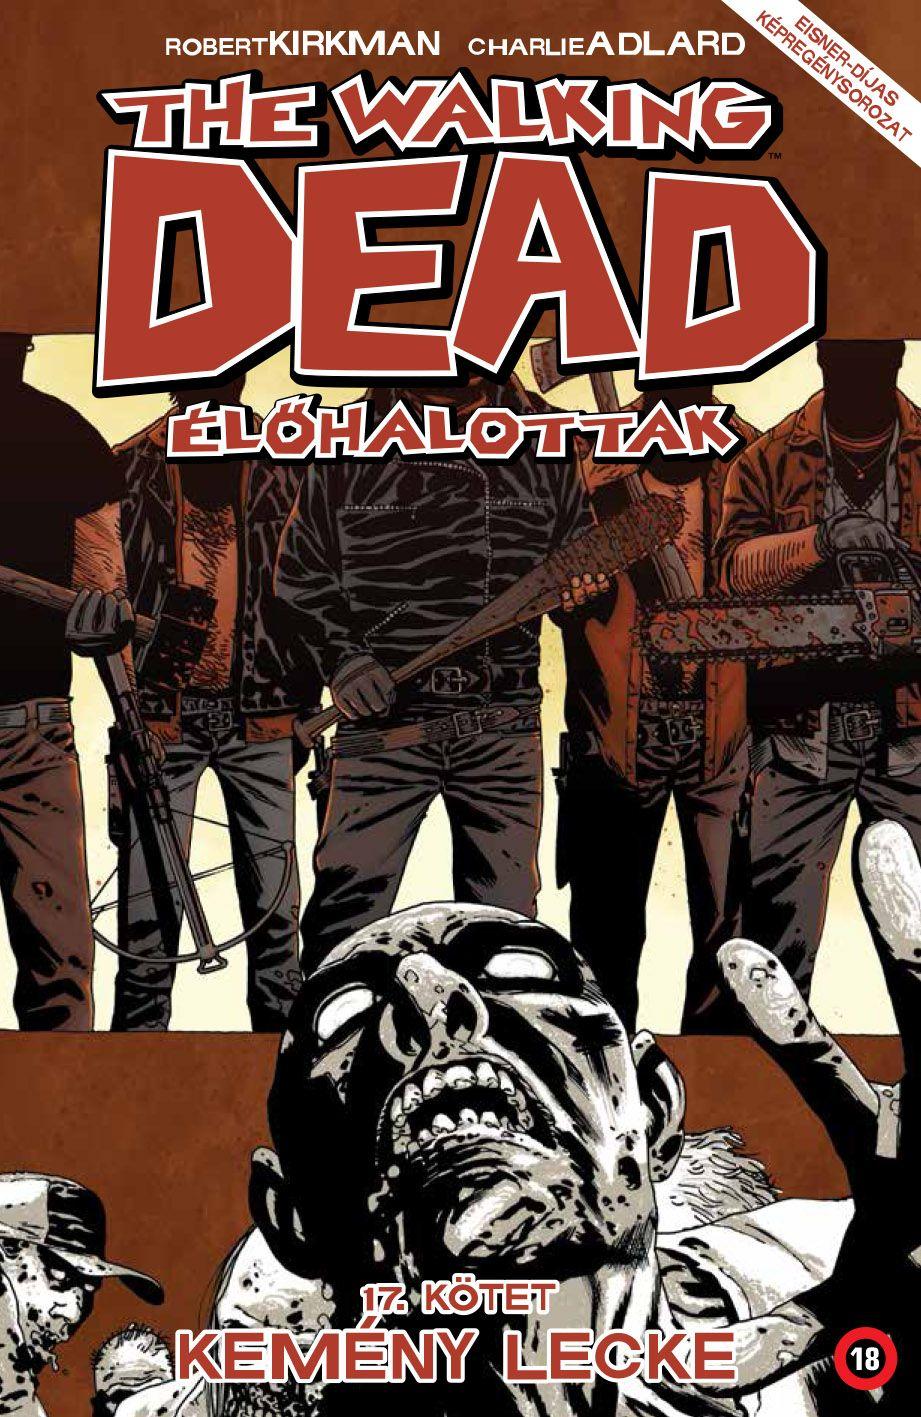 Robert Kirkman (szerző), Charlie Adlard (illusztrátor) - The Walking Dead - Élőhalottak 17. - Kemény lecke